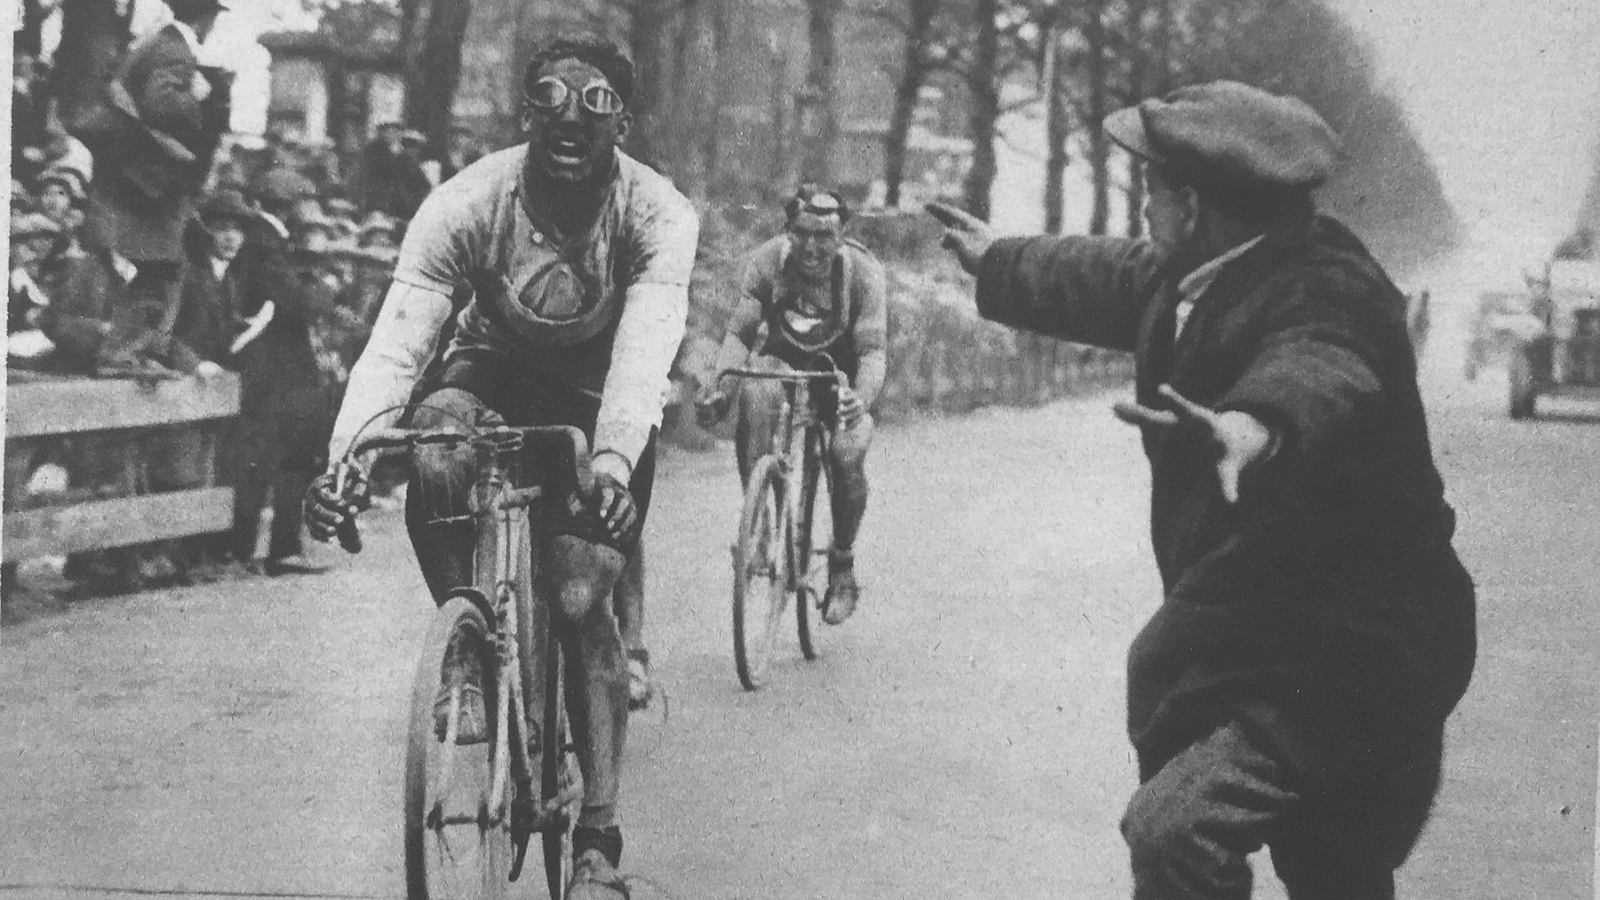 Vintage Paris-Roubaix 1928 -Andre Leducq wins the race